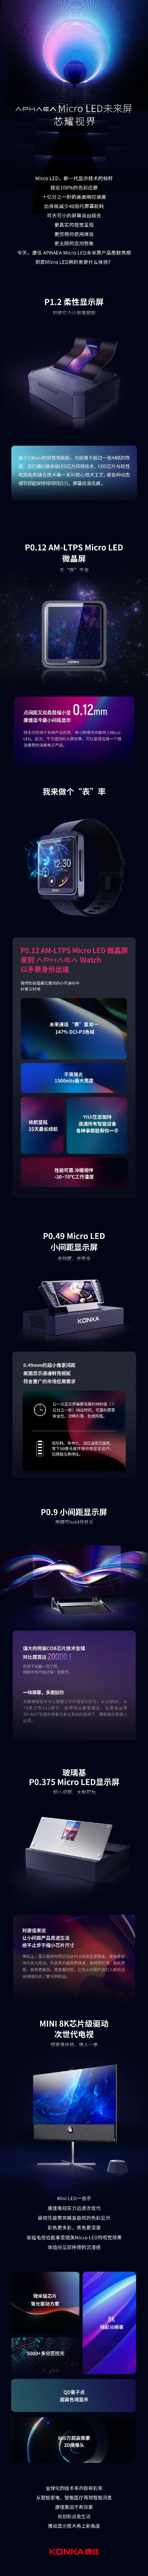 新知达人, 康佳首发Micro LED手表，索尼Micro LED新技术也将到来？